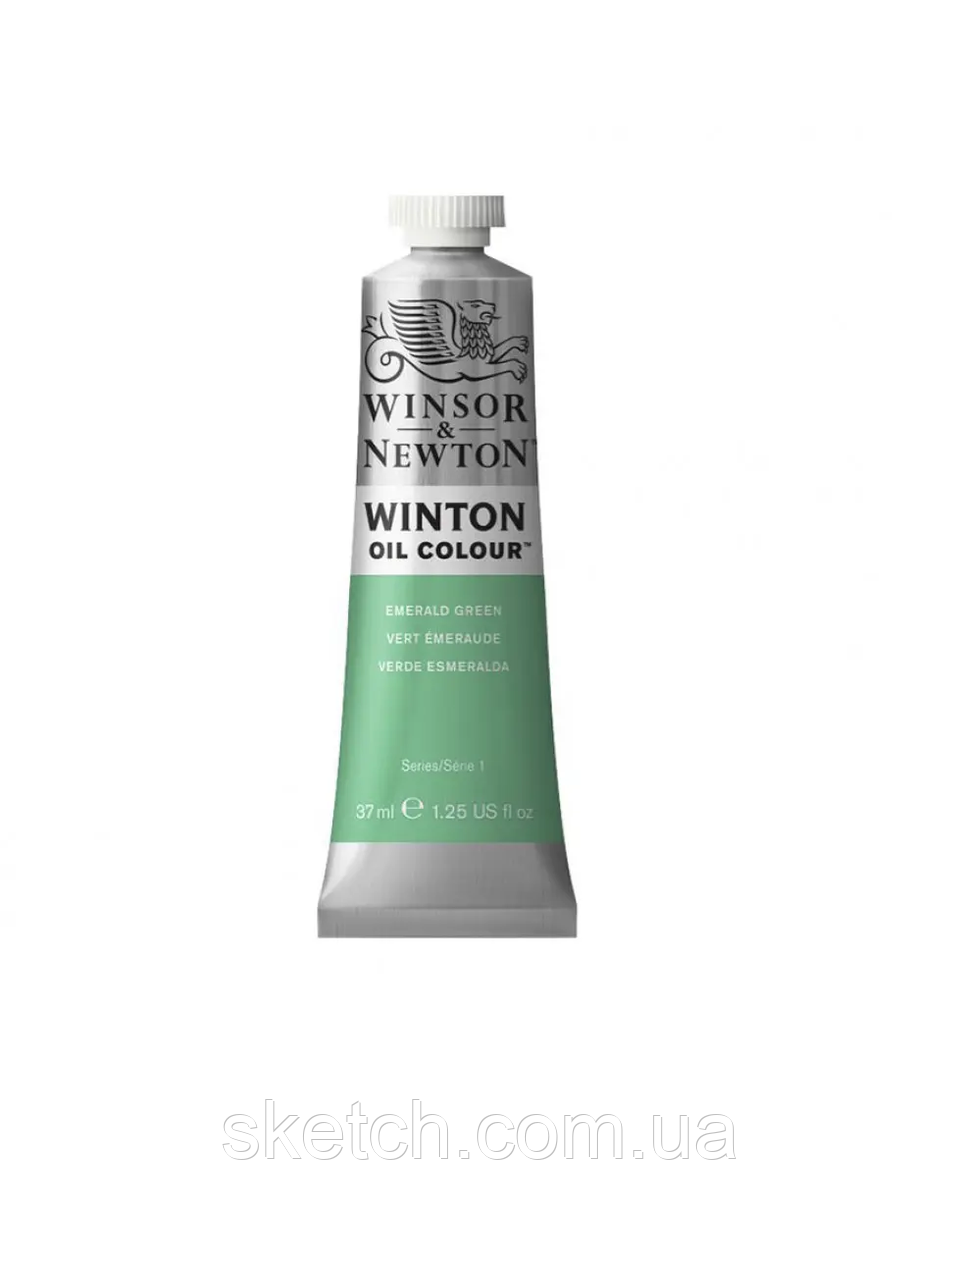 Олійна фарба WINSOR & NEWTON Winton Oil Colour, №241 Смарагдово-зелений, 37мл